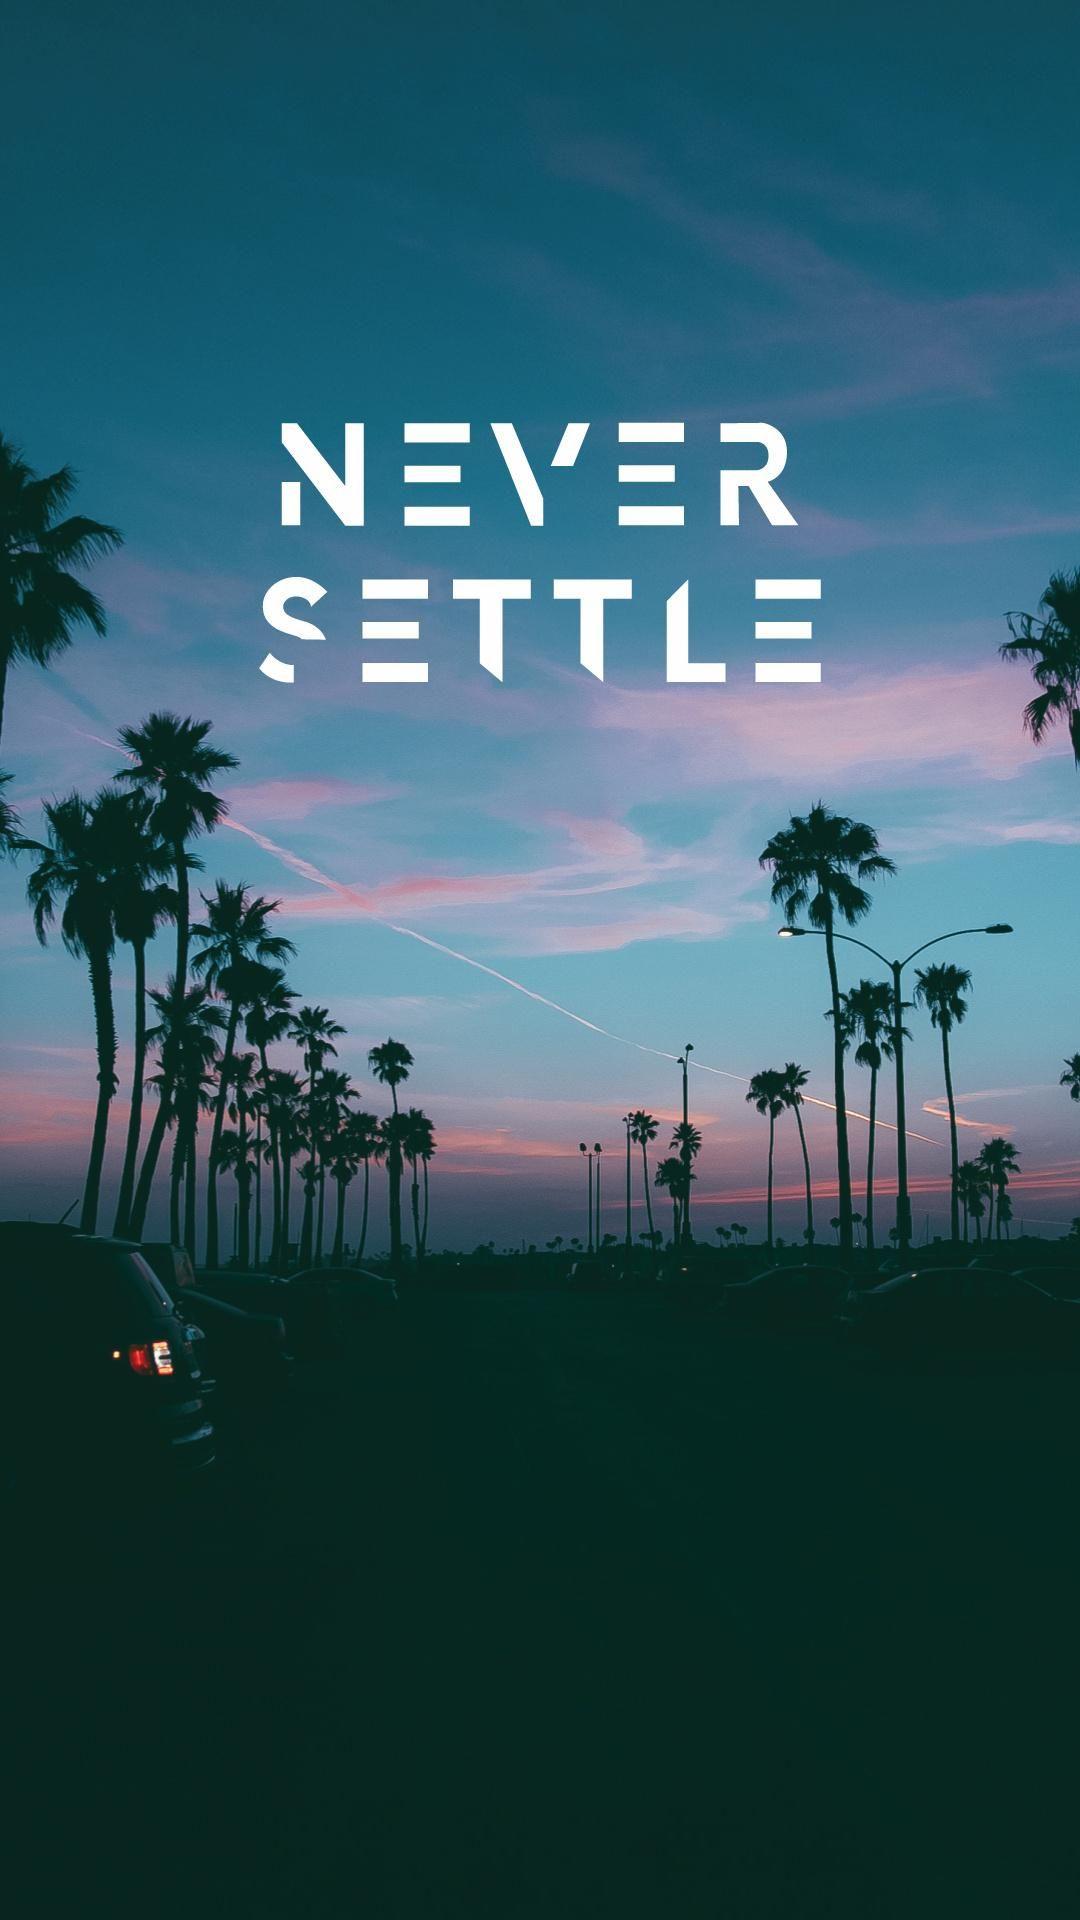 Never settle mobile HD phone wallpaper | Pxfuel